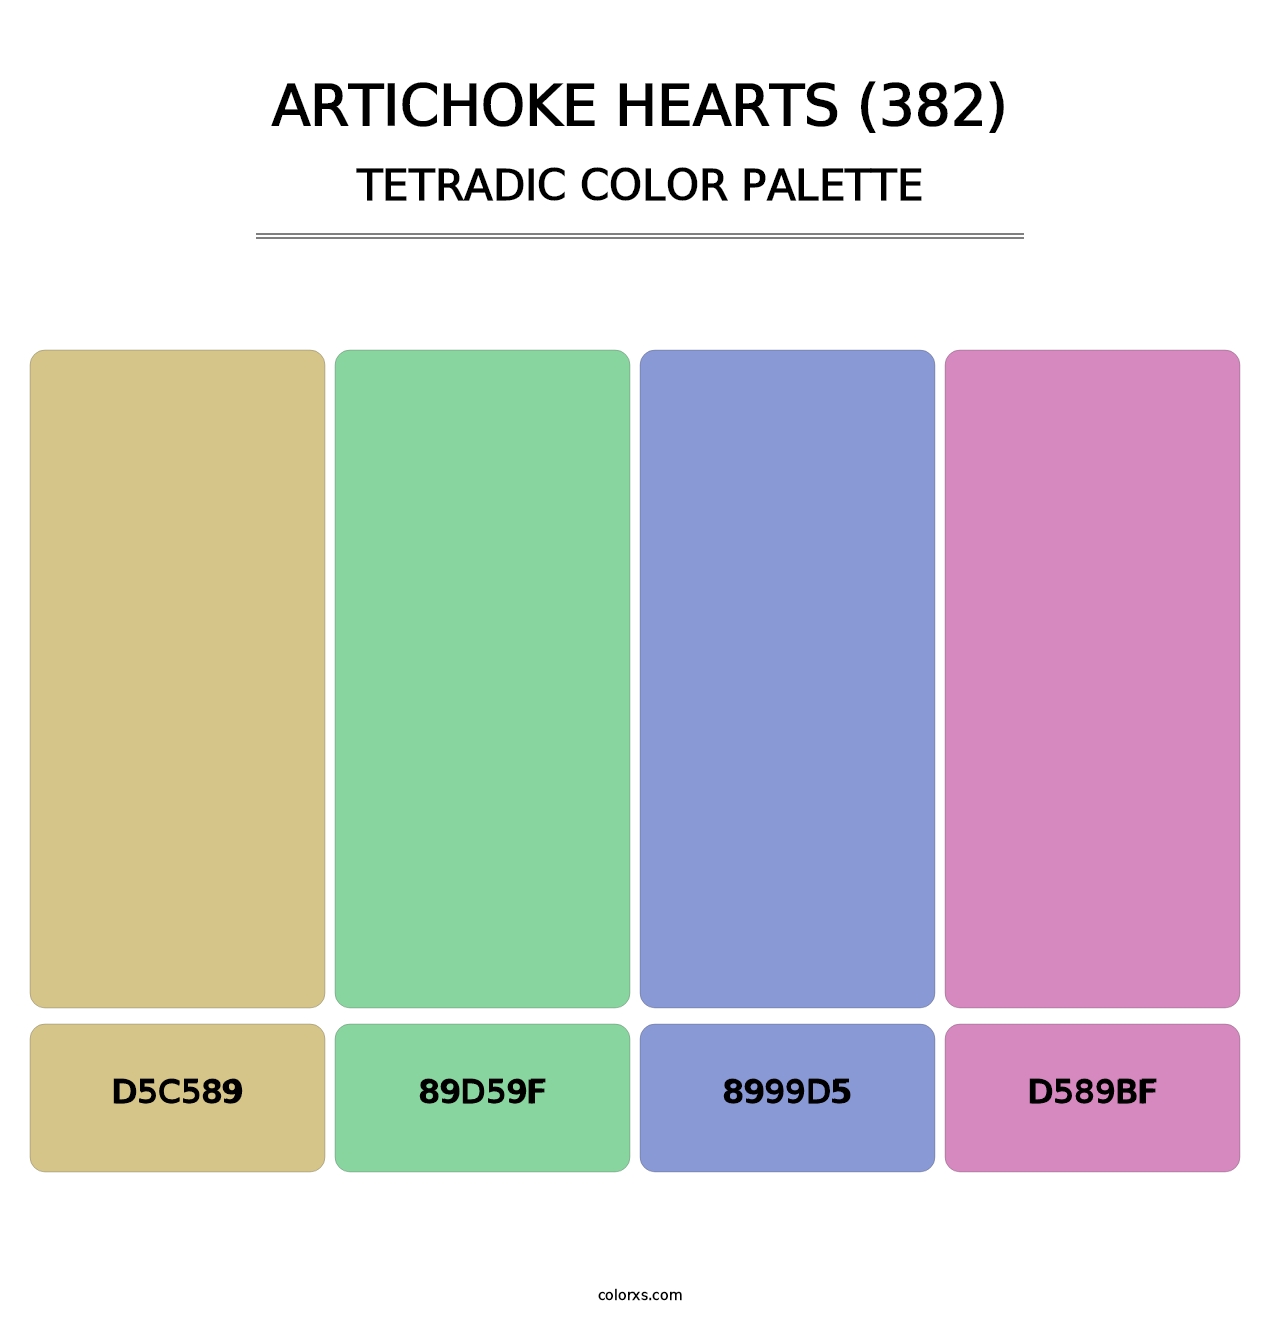 Artichoke Hearts (382) - Tetradic Color Palette